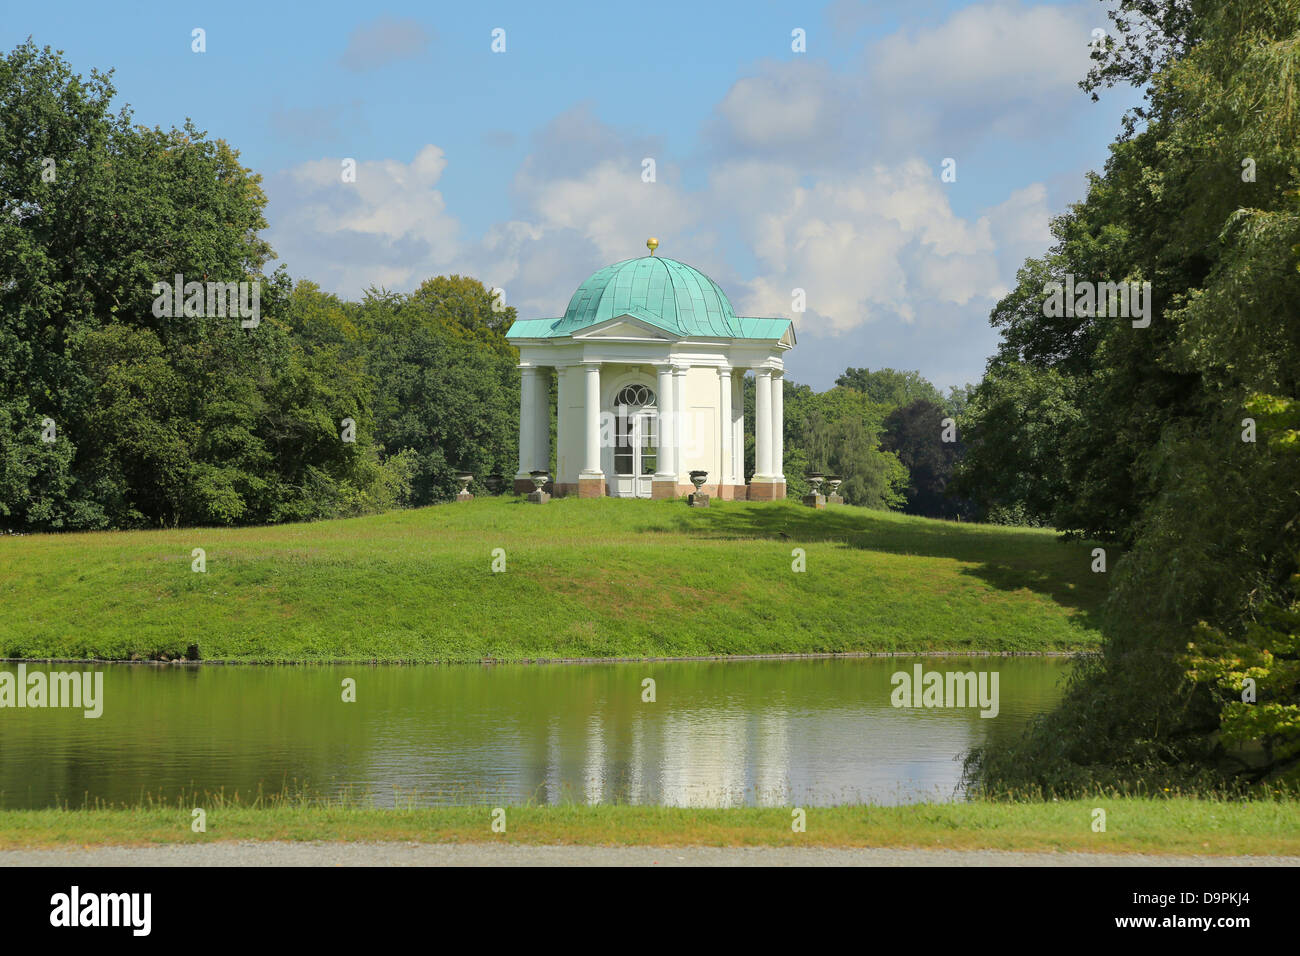 Gewölbte Tempel auf Swan Island im Park Karlsaue, Kassel, Deutschland Stockfoto